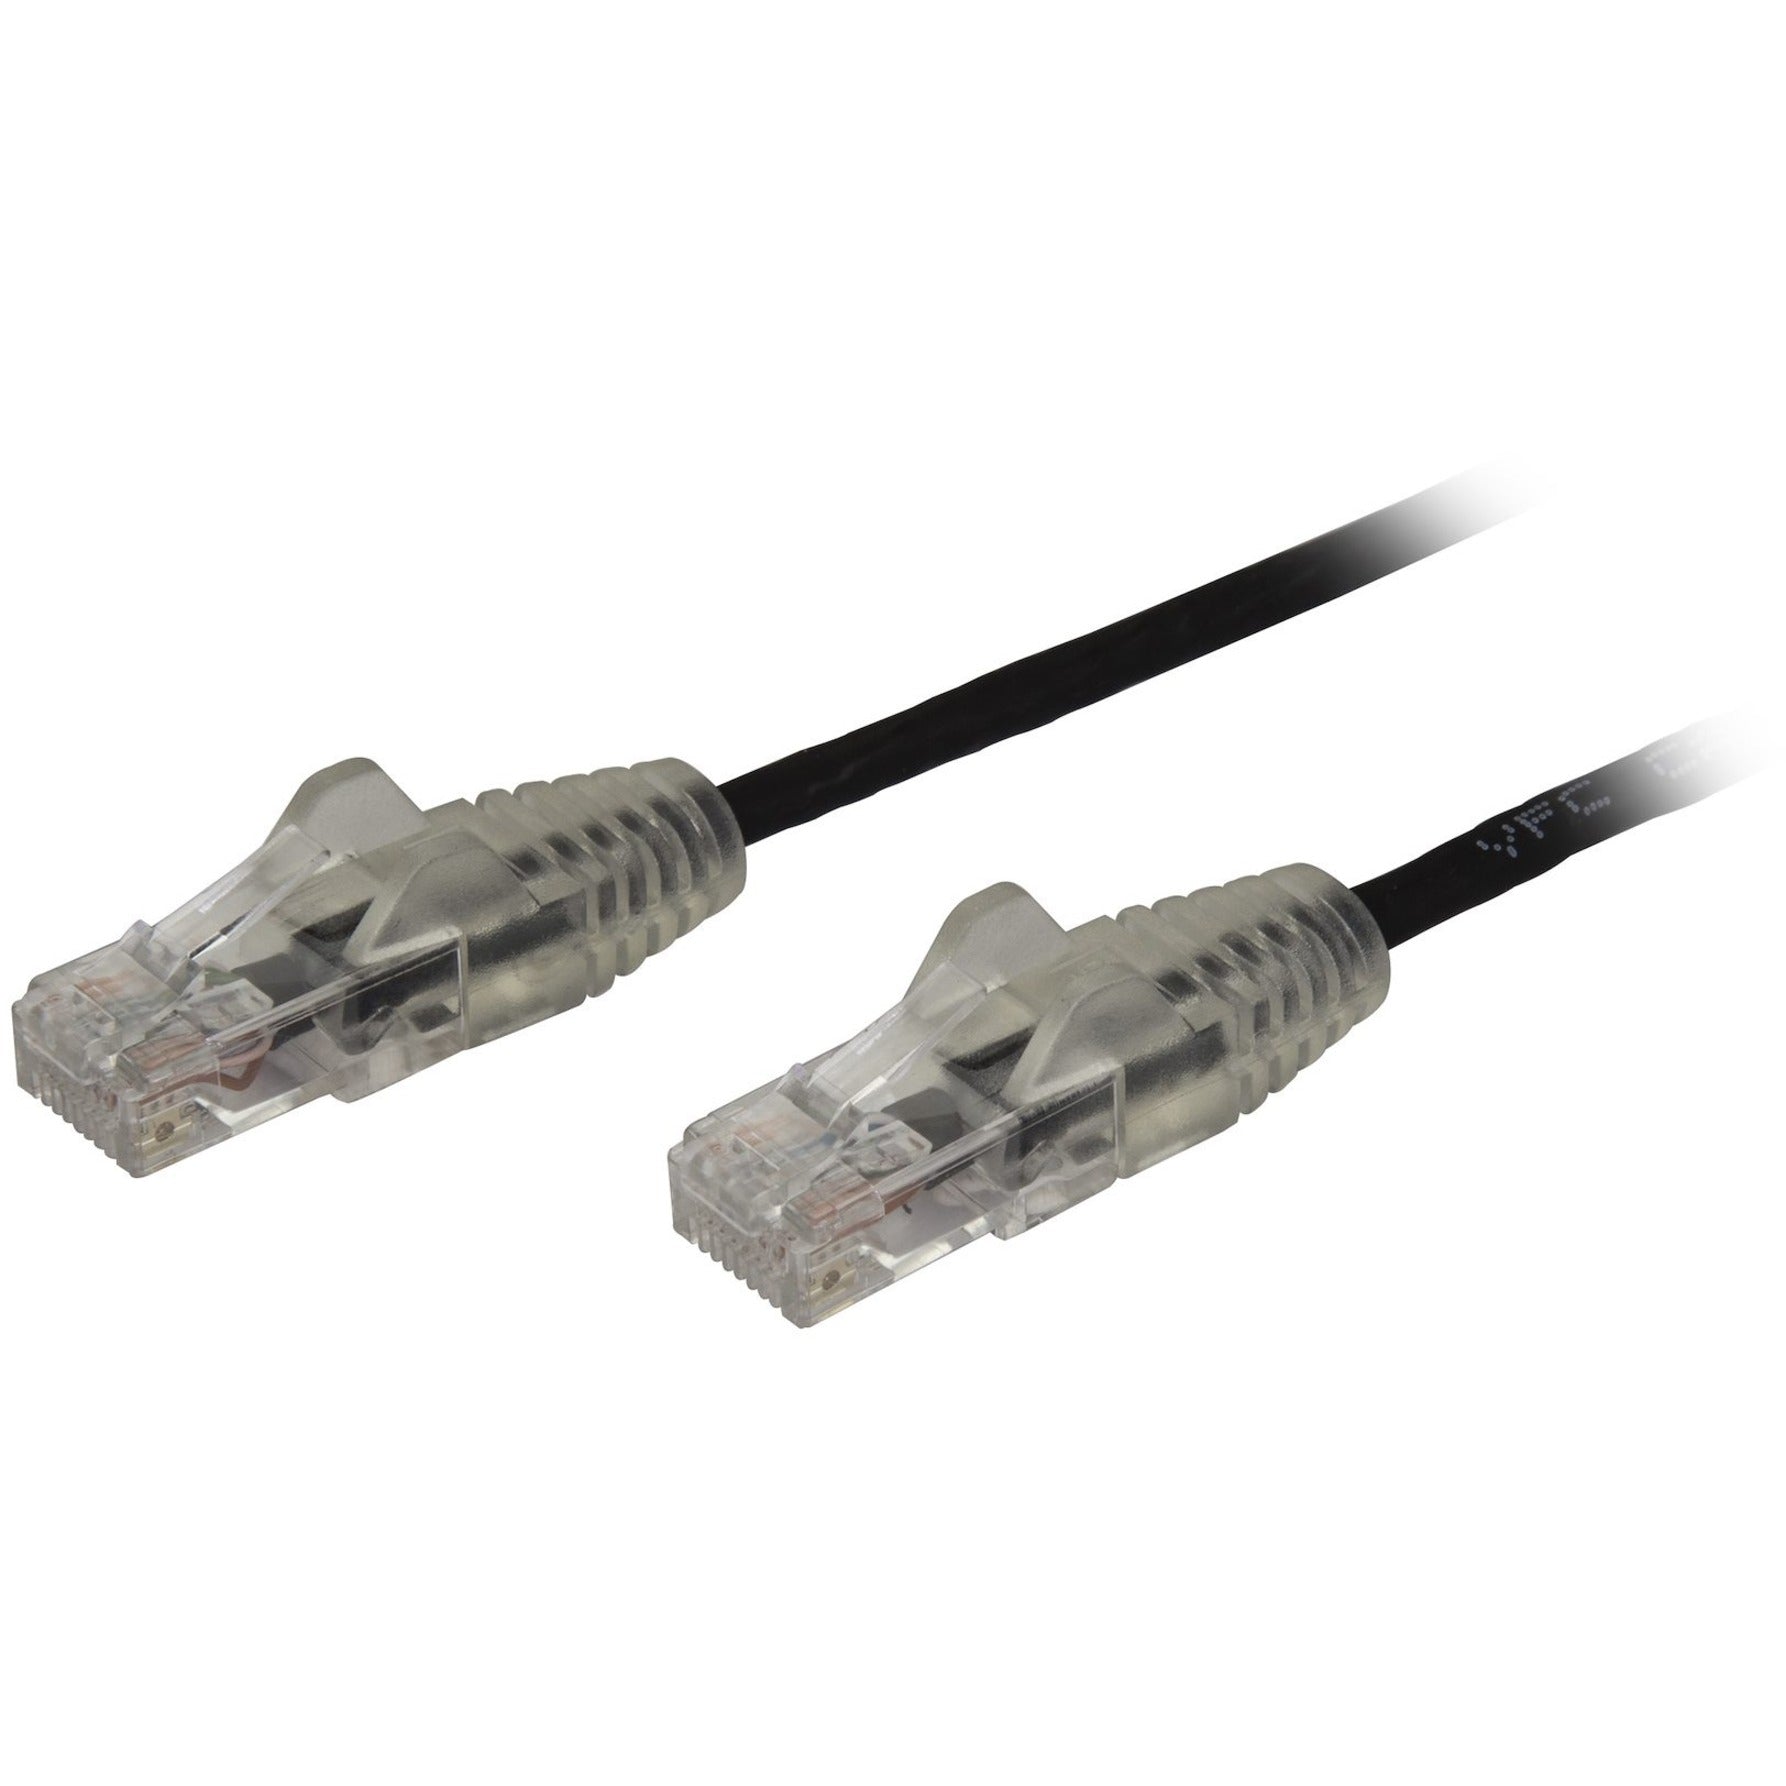 StarTech.com N6PAT3BKS Cable de red de parche Cat.6 3 pies Cable Ethernet Negro - Conectores RJ45 delgados y sin enganches Cable Cat6 Cable de parche Cat6 Cable de red Cat6